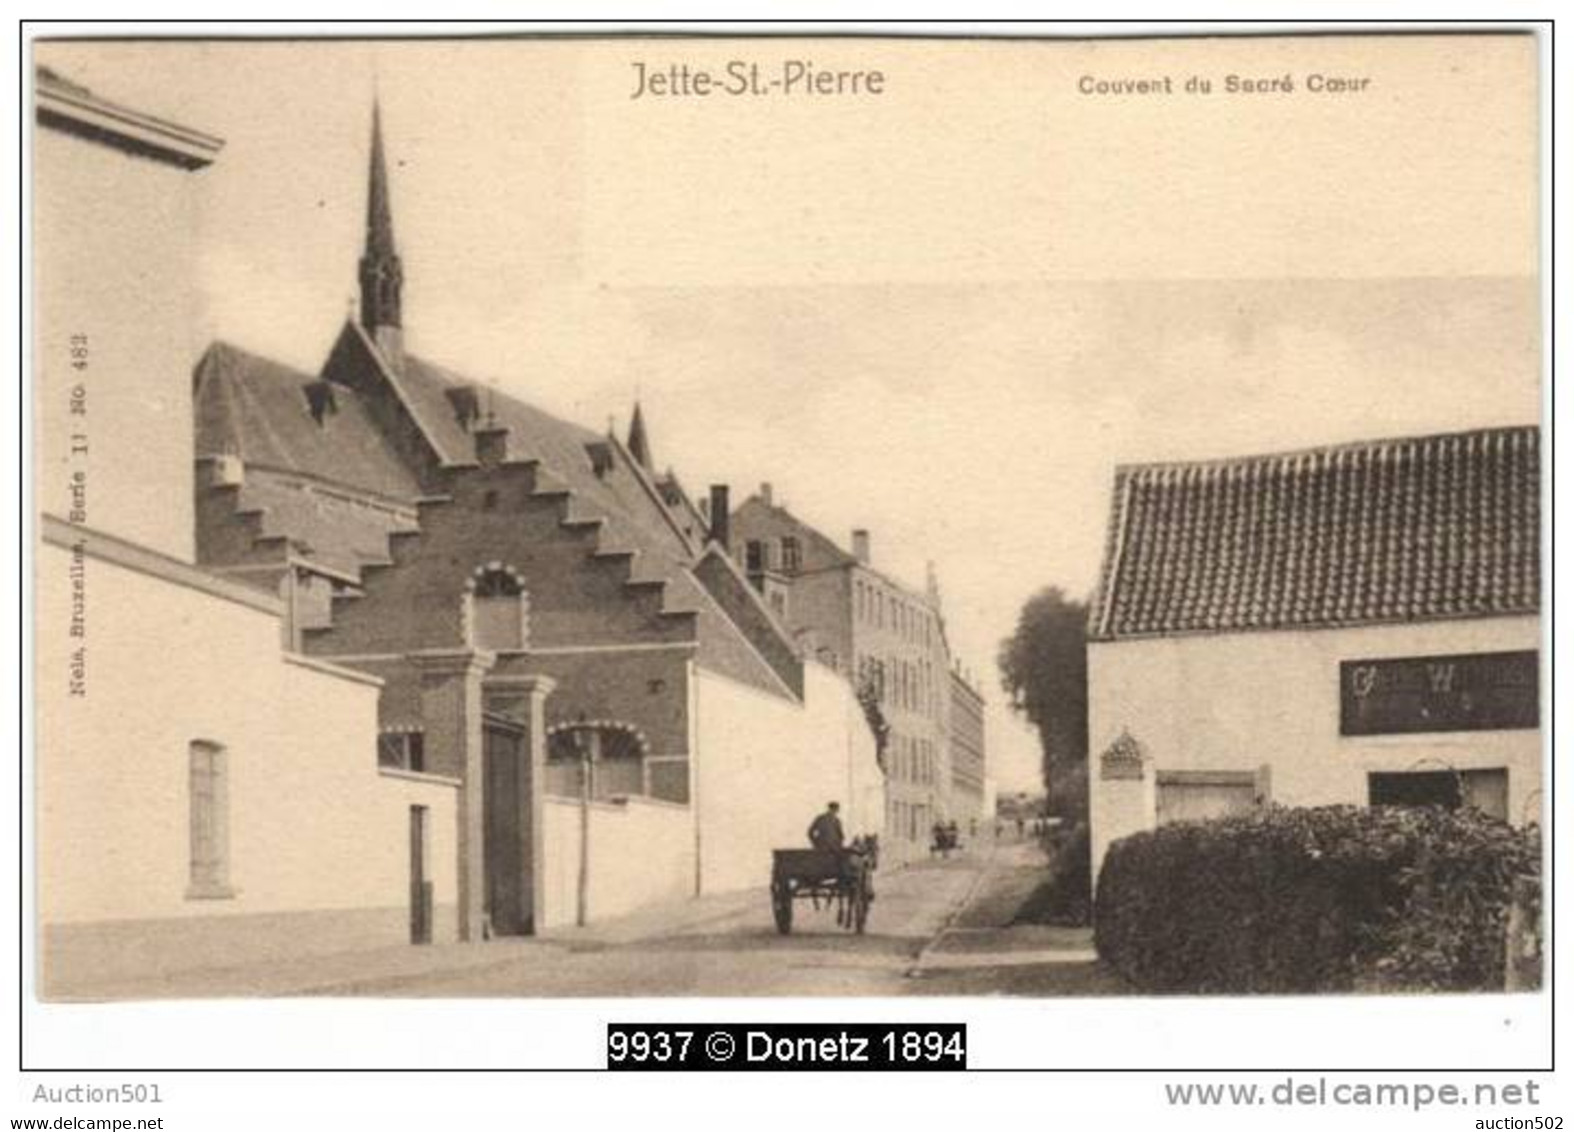 09937g COUVENT Du SACRE COEUR  - Jette St. Pierre - Charrette - Jette